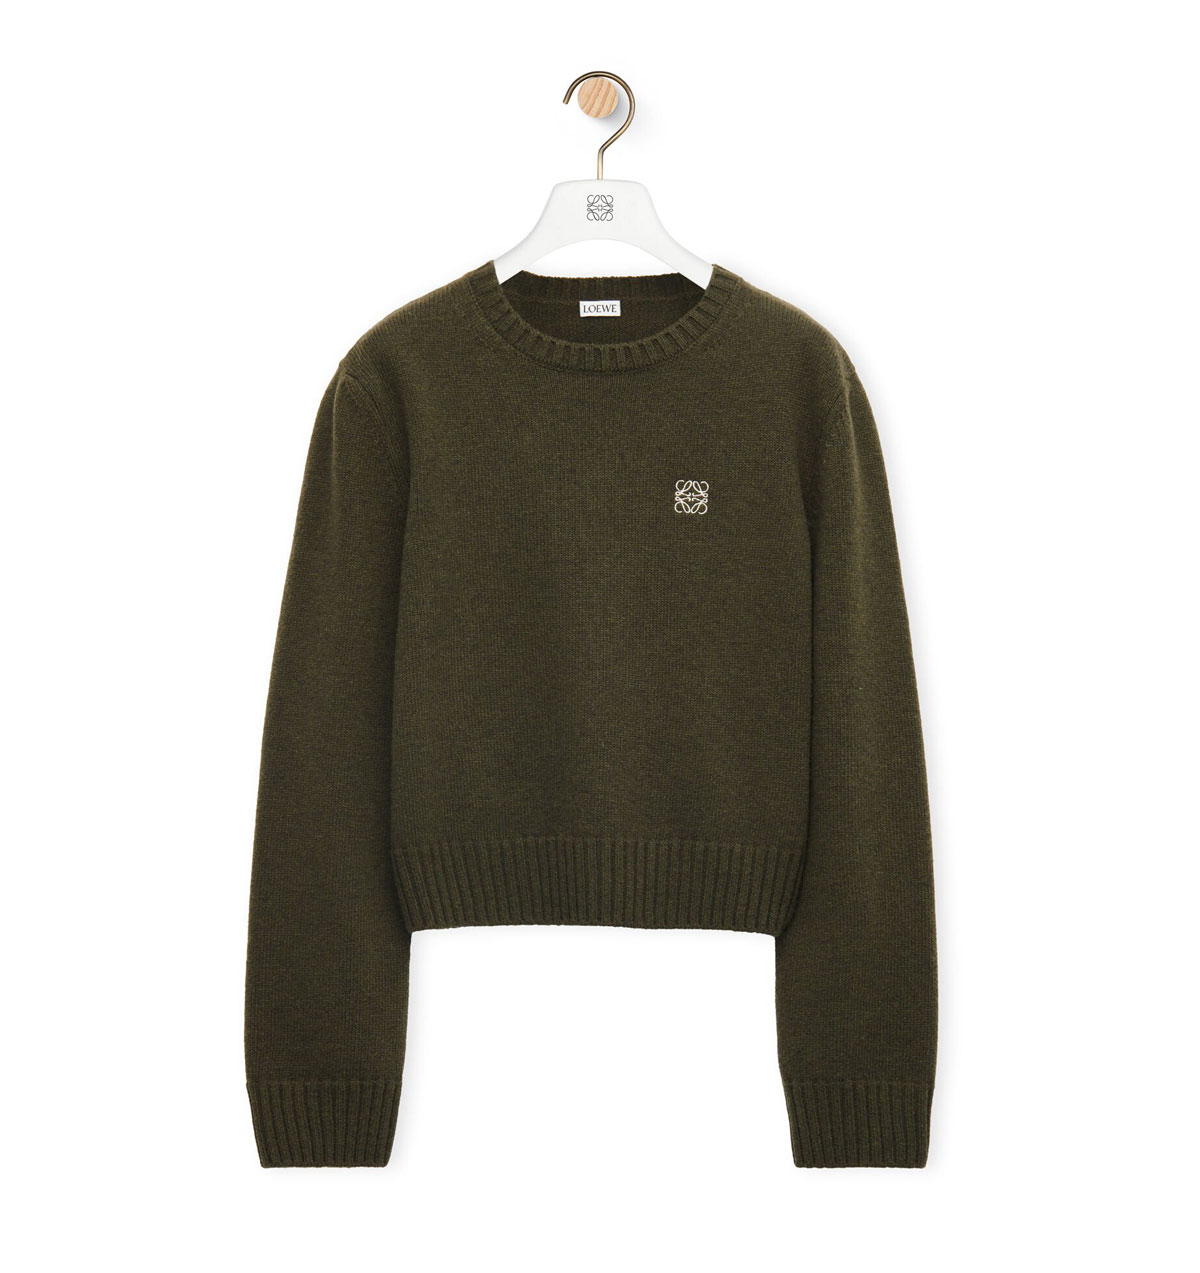 Loewe Sweater in wool